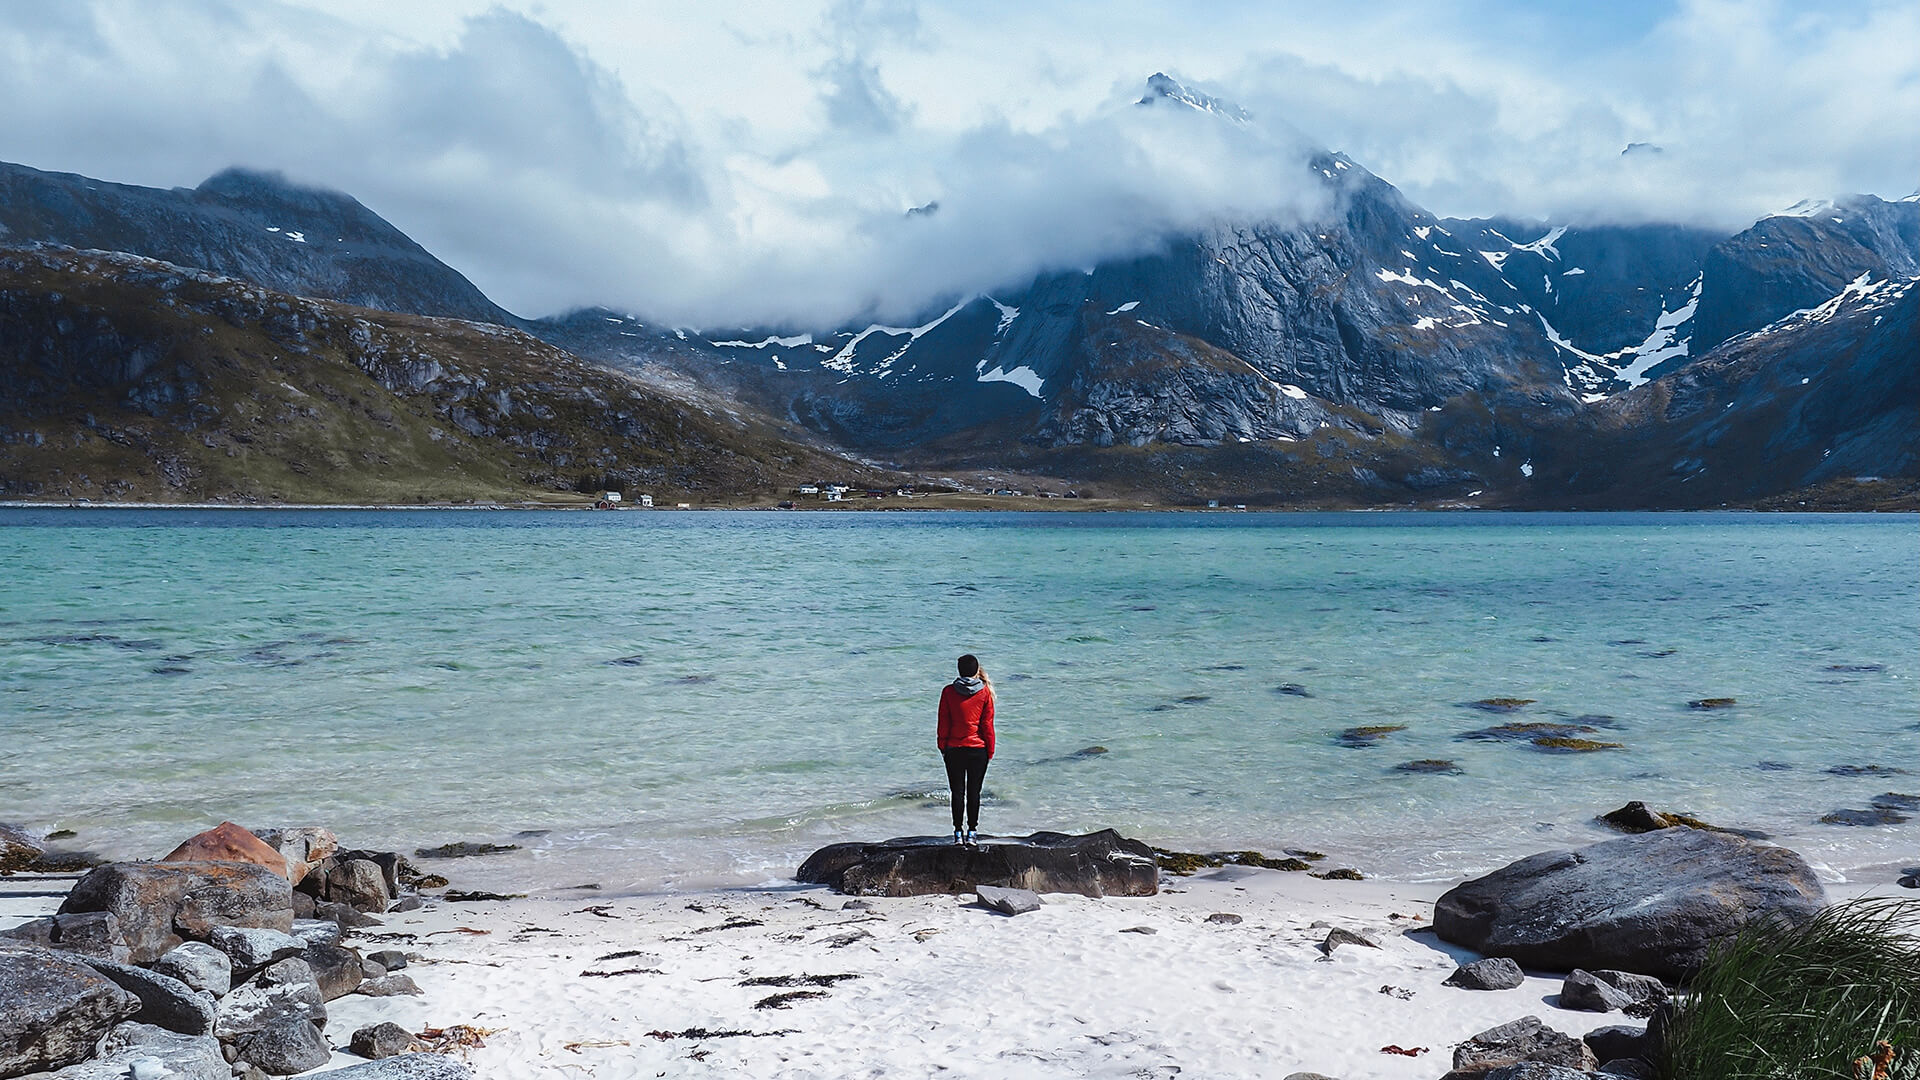 Image d'un voyageur debout au bord des eaux côtières brumeuses des îles Lofoten, en Norvège – en arrière-plan, de hautes montagnes se profilent.